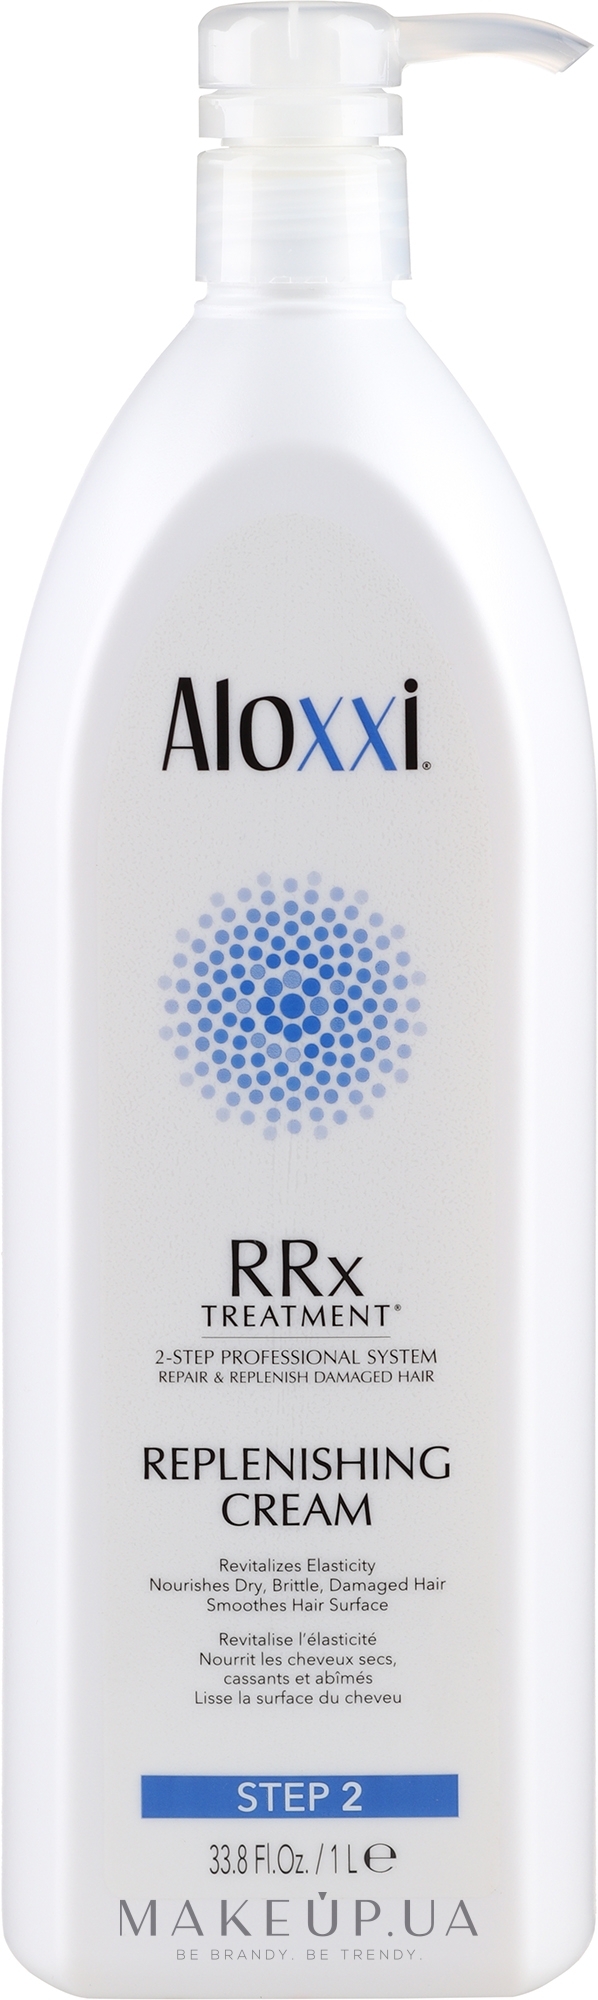 Восстанавливающий крем для волос - Aloxxi Rrx Treatment Replenishing Cream — фото 1000ml